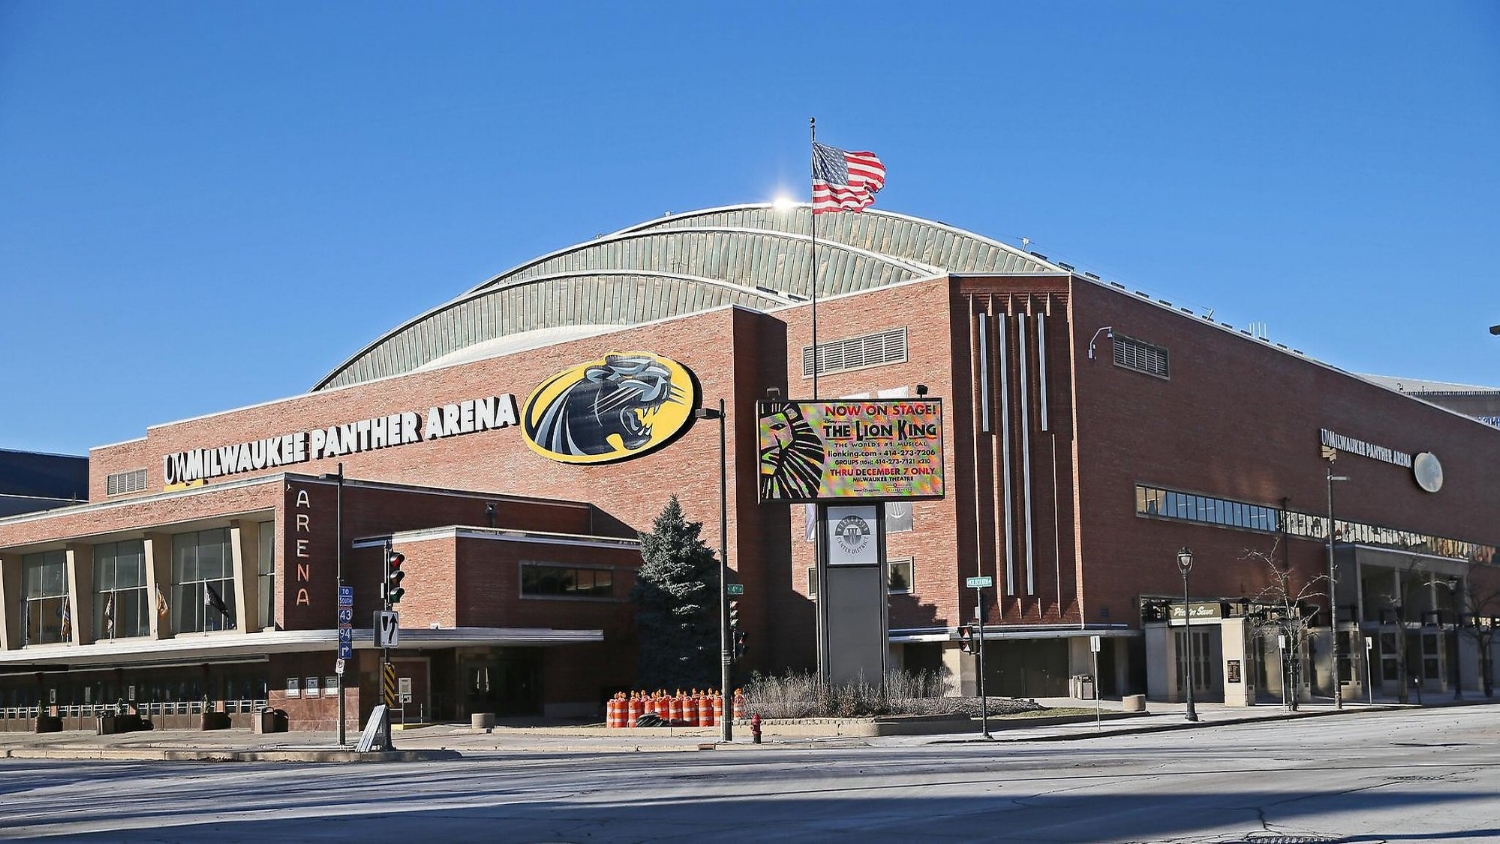 UW Milwaukee Panther Arena